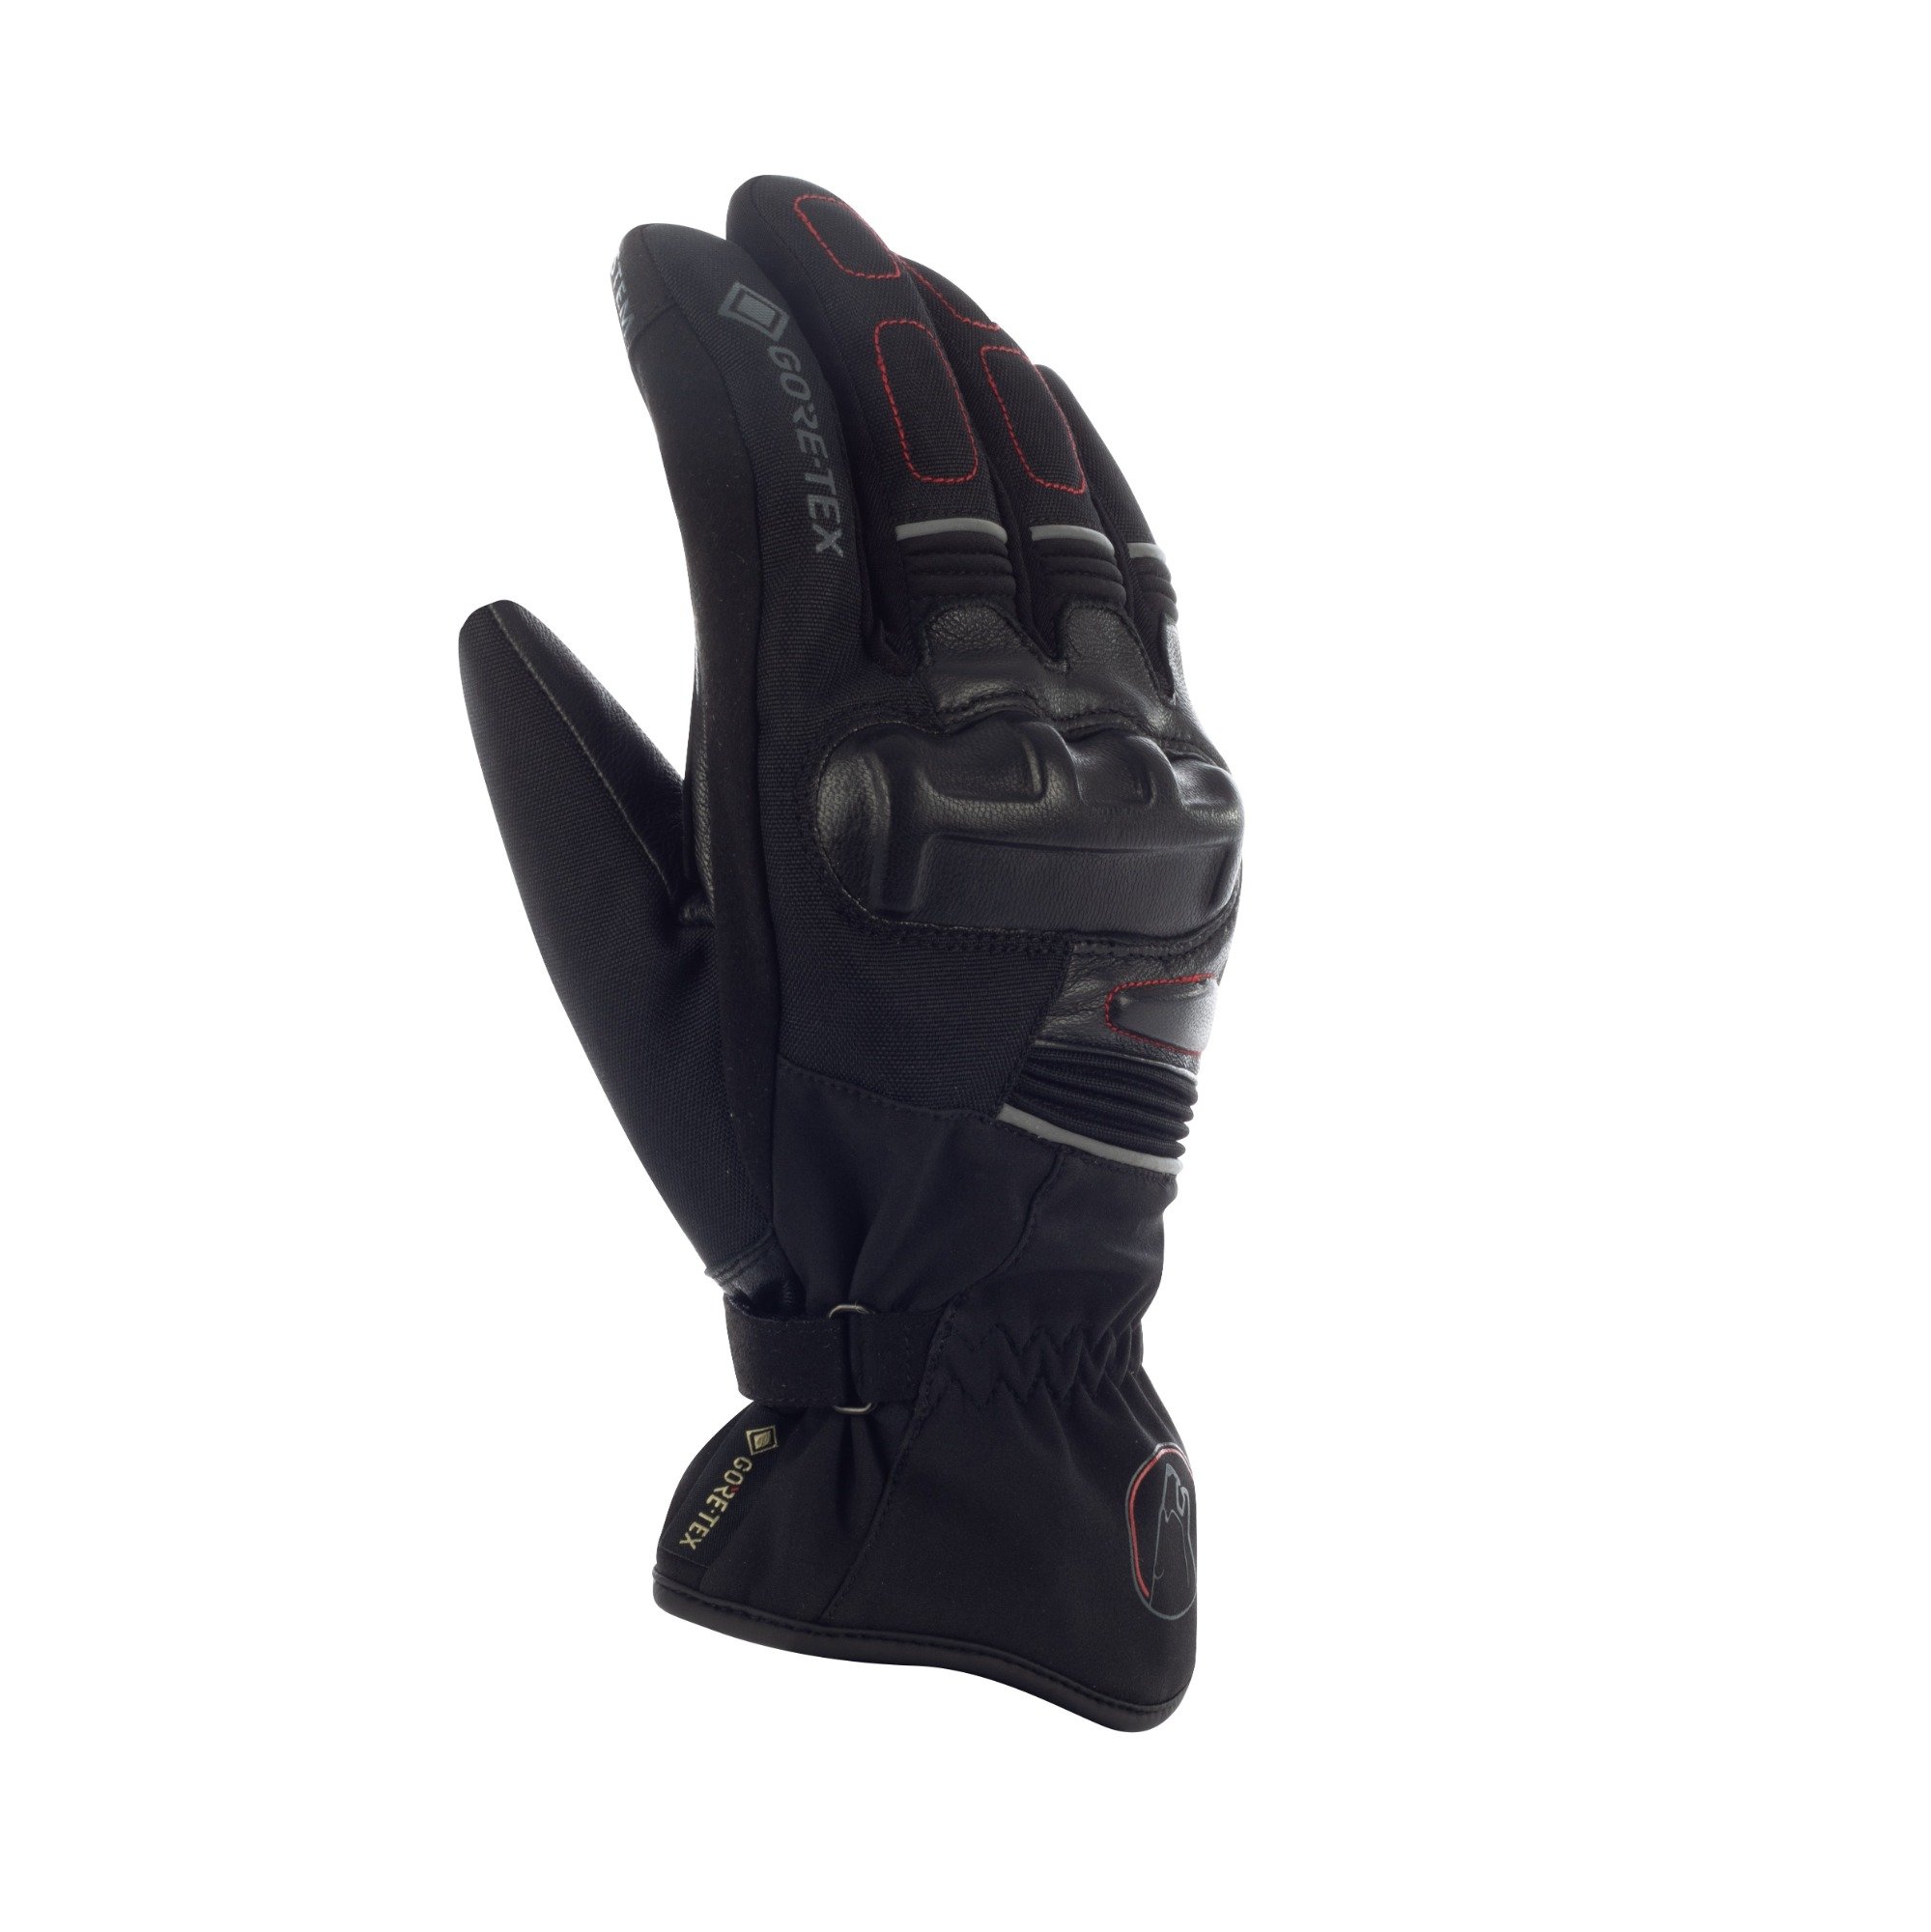 Image of Bering Punch GTX Gloves Black Size T13 EN